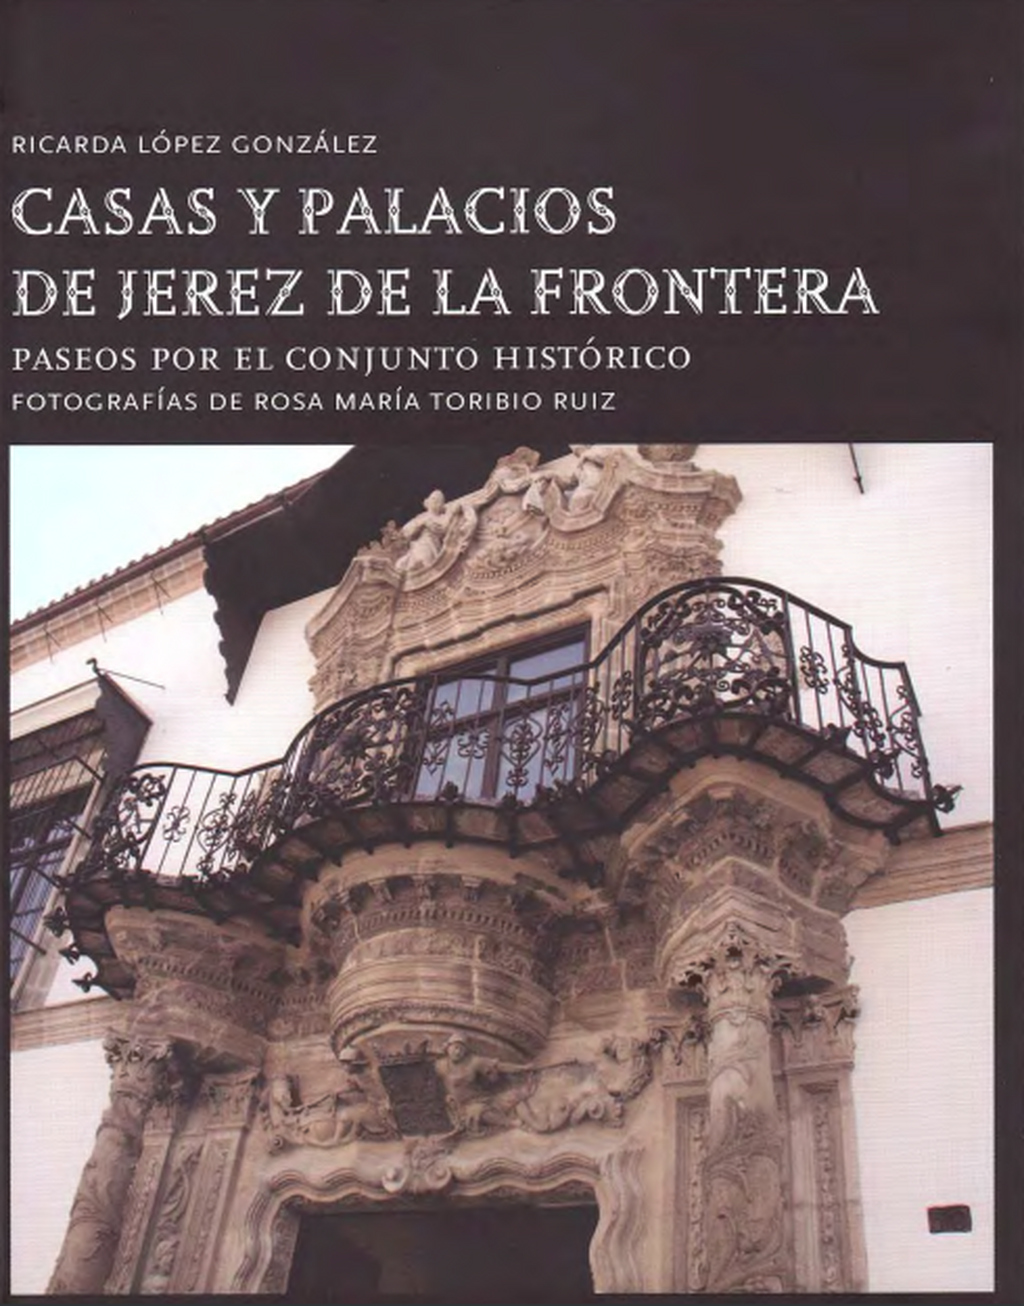 'Casas y Palacios de Jerez de la Frontera'. Ricarda L&oacute;pez Gonz&aacute;lez